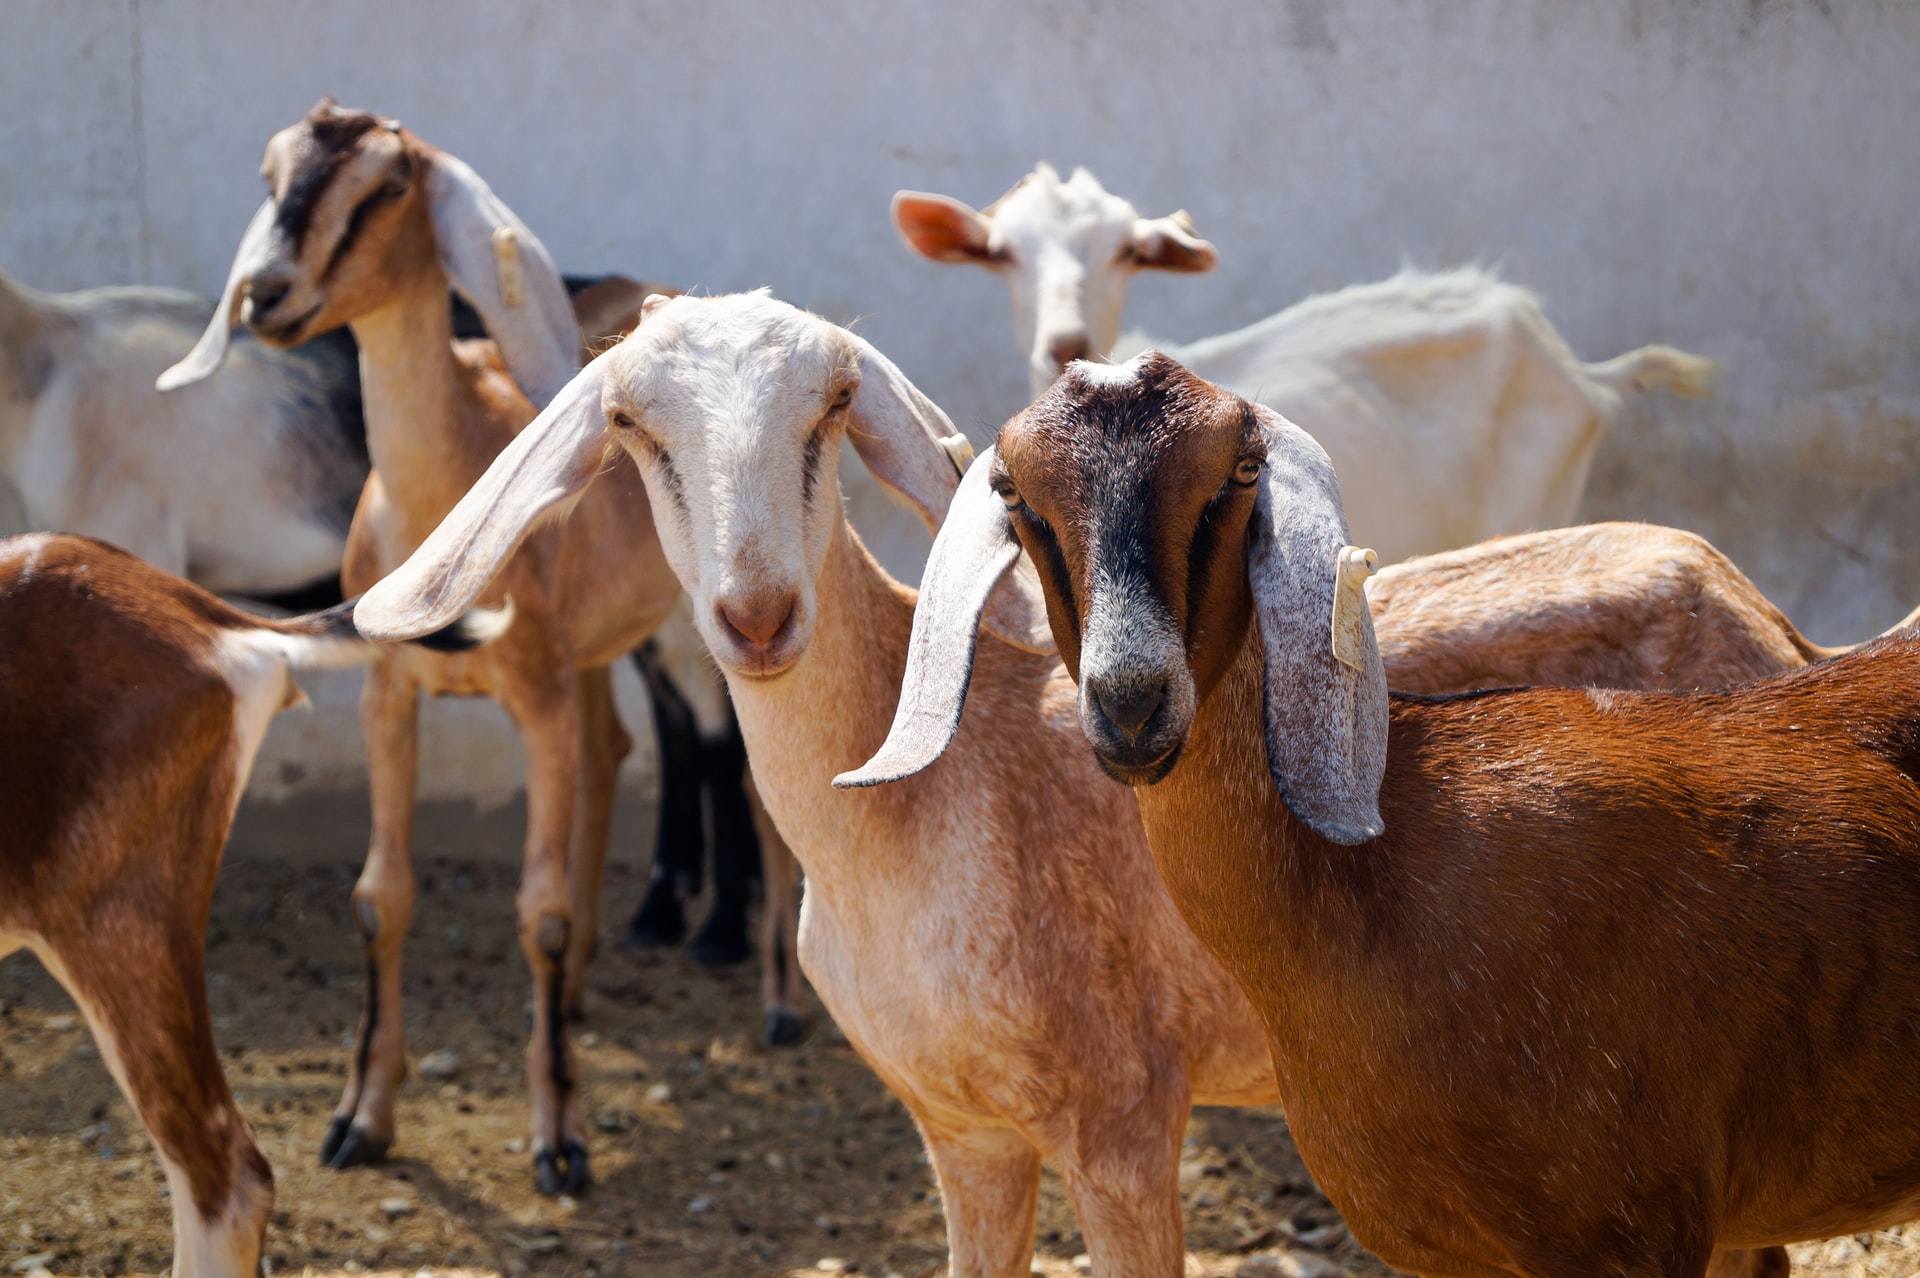 goat livestock